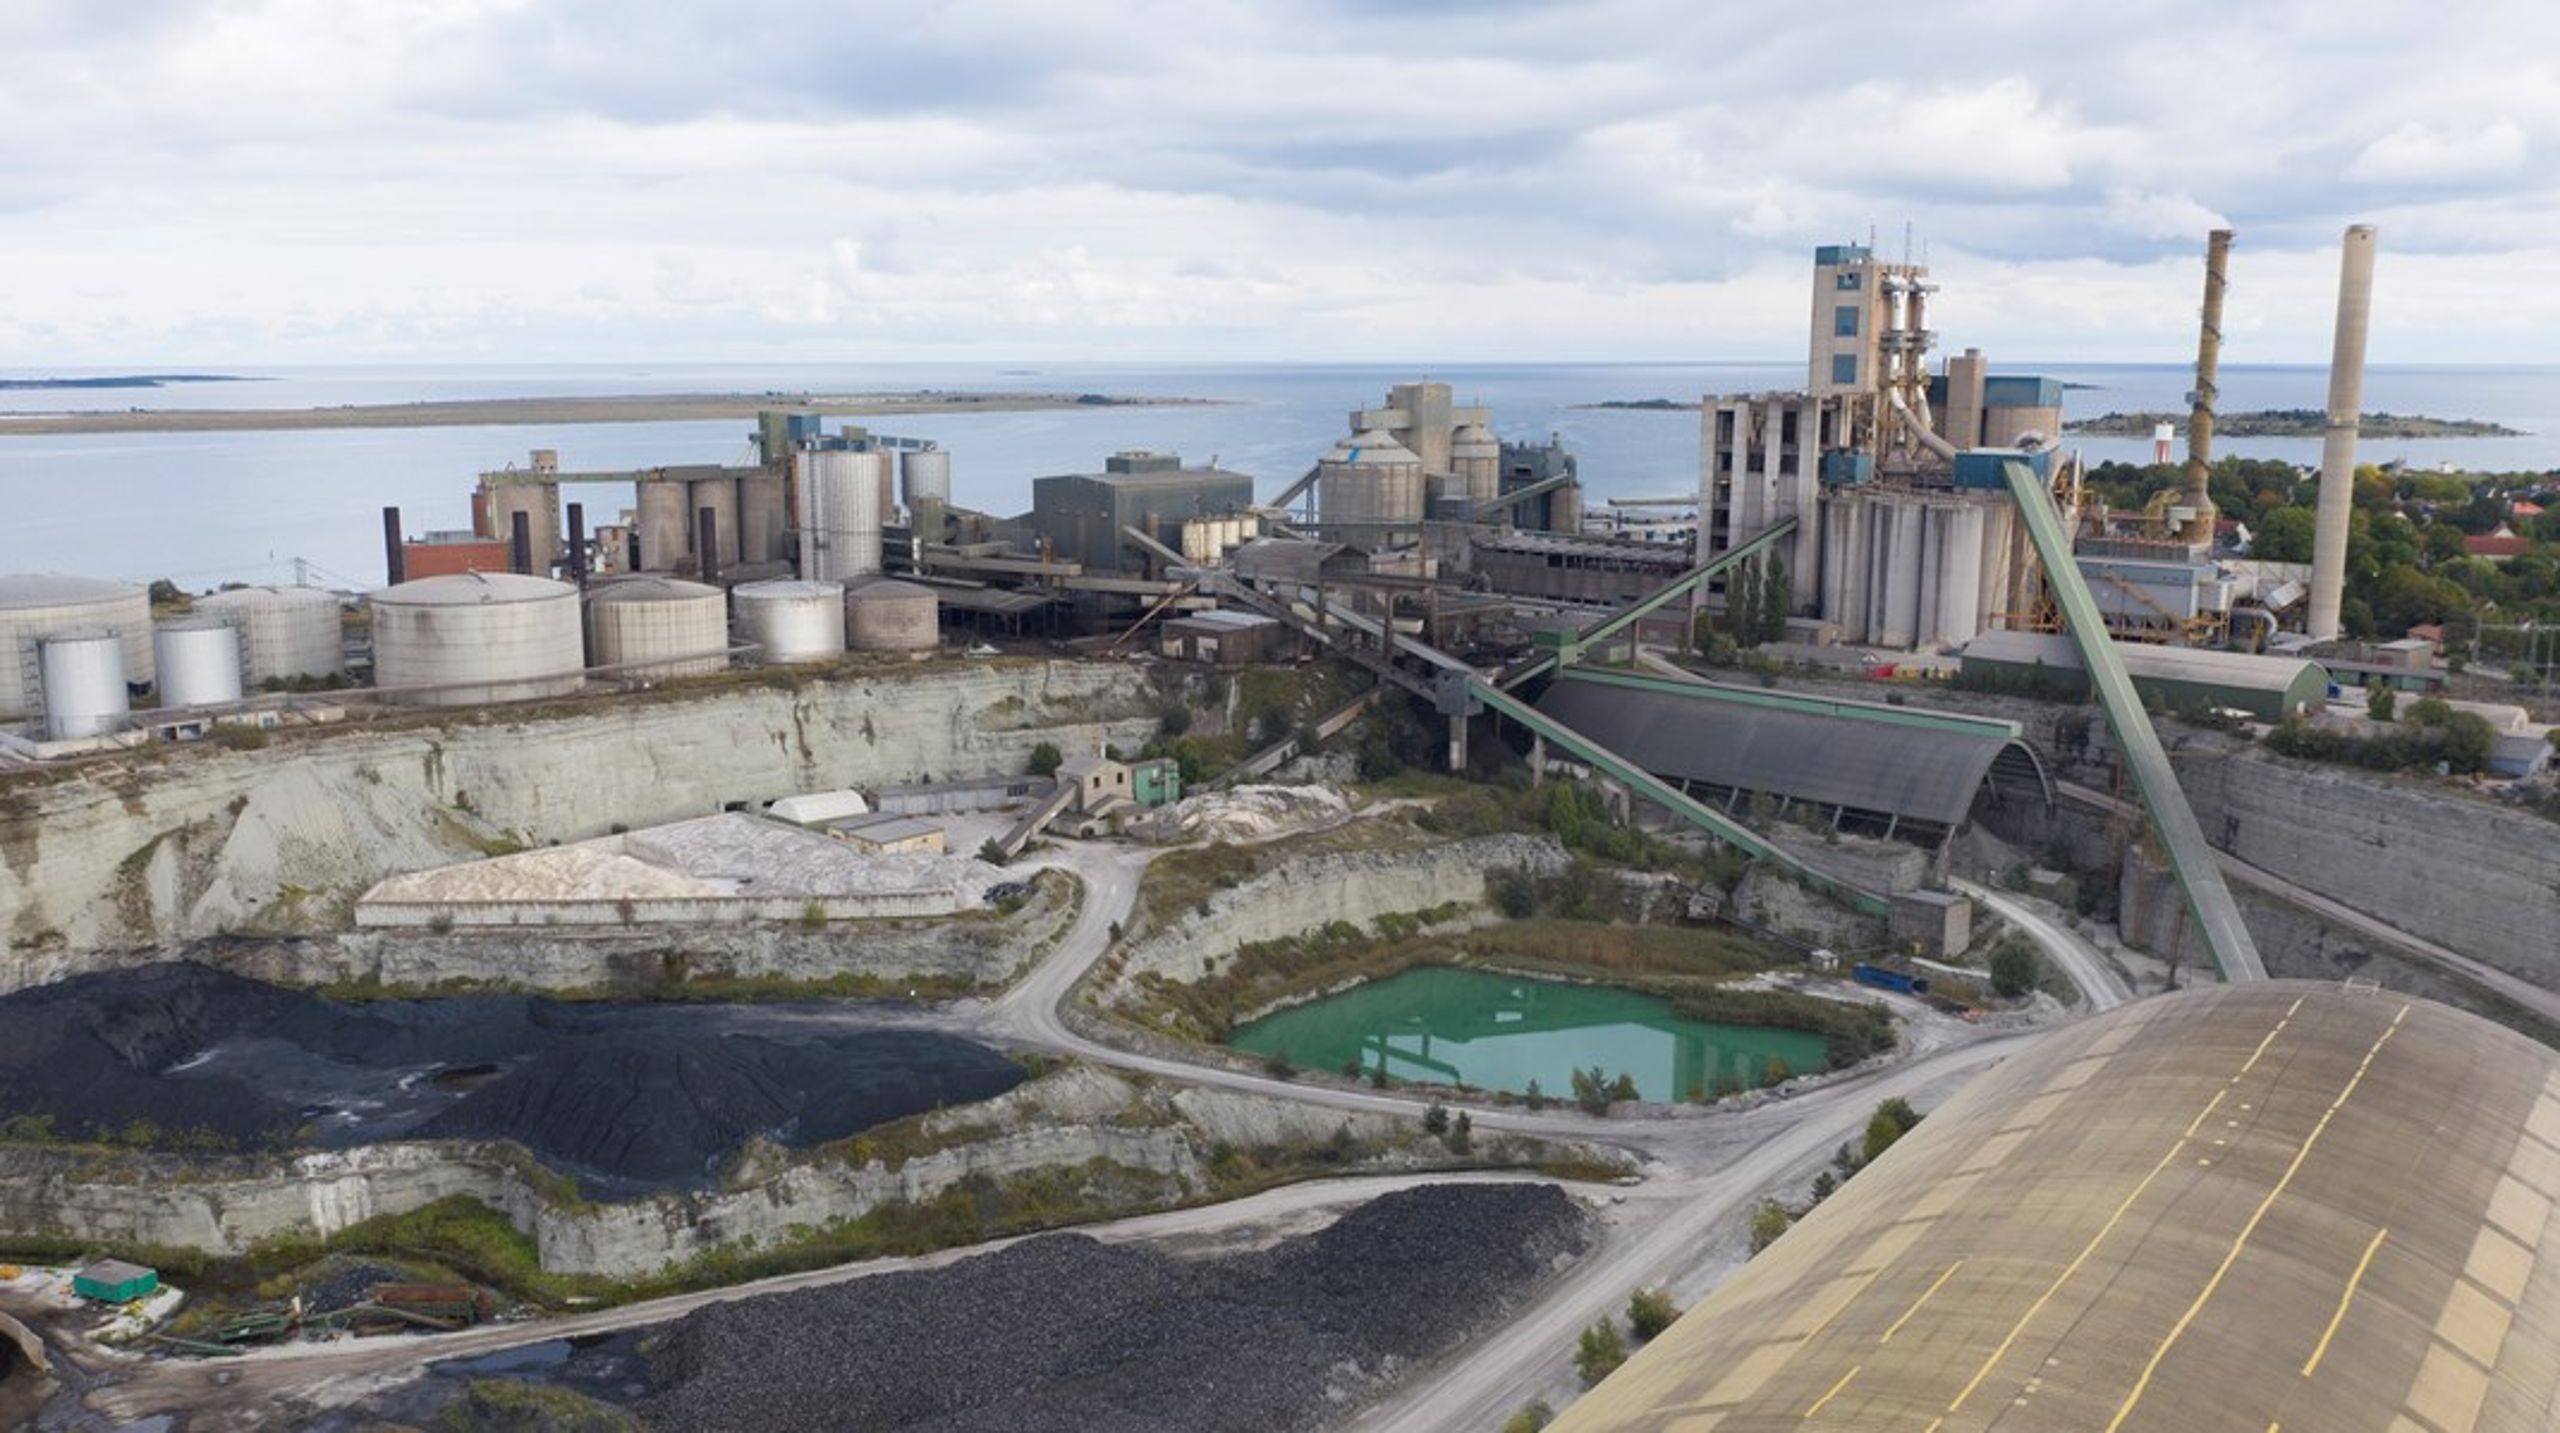 ”En utebliven produktion i Cementas anläggning på Gotland kommer att medföra allvarliga samhällskonsekvenser.”